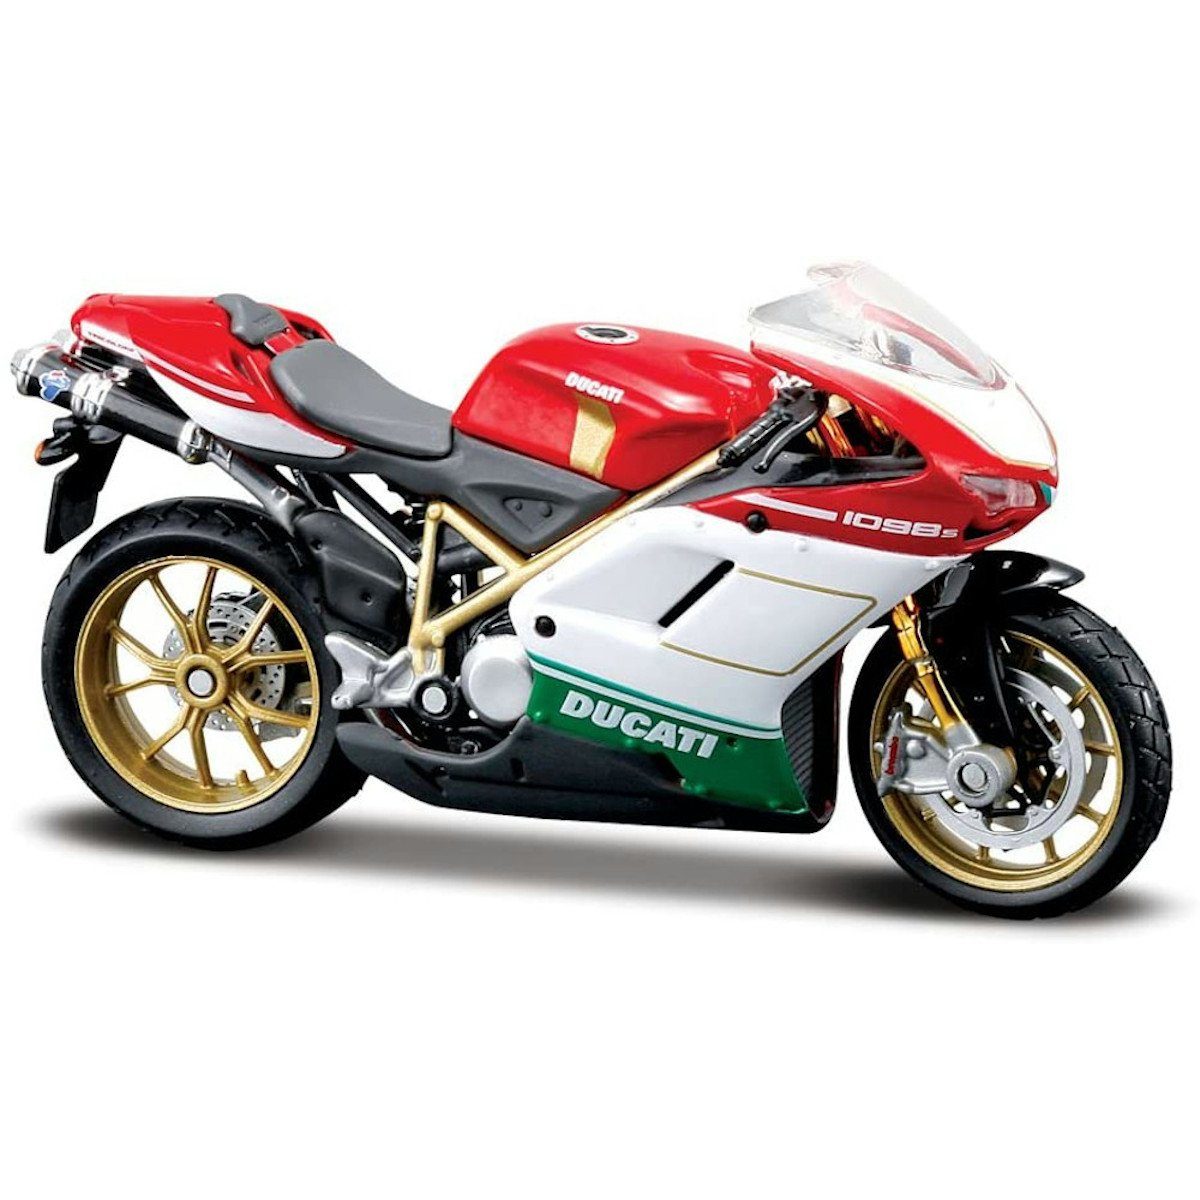 Maisto® Modellmotorrad Modellmotorrad - Ducati 1098 Tricolore (rot-weiß-grün, Maßstab 1:18), Maßstab 1:18, detailliertes Modell